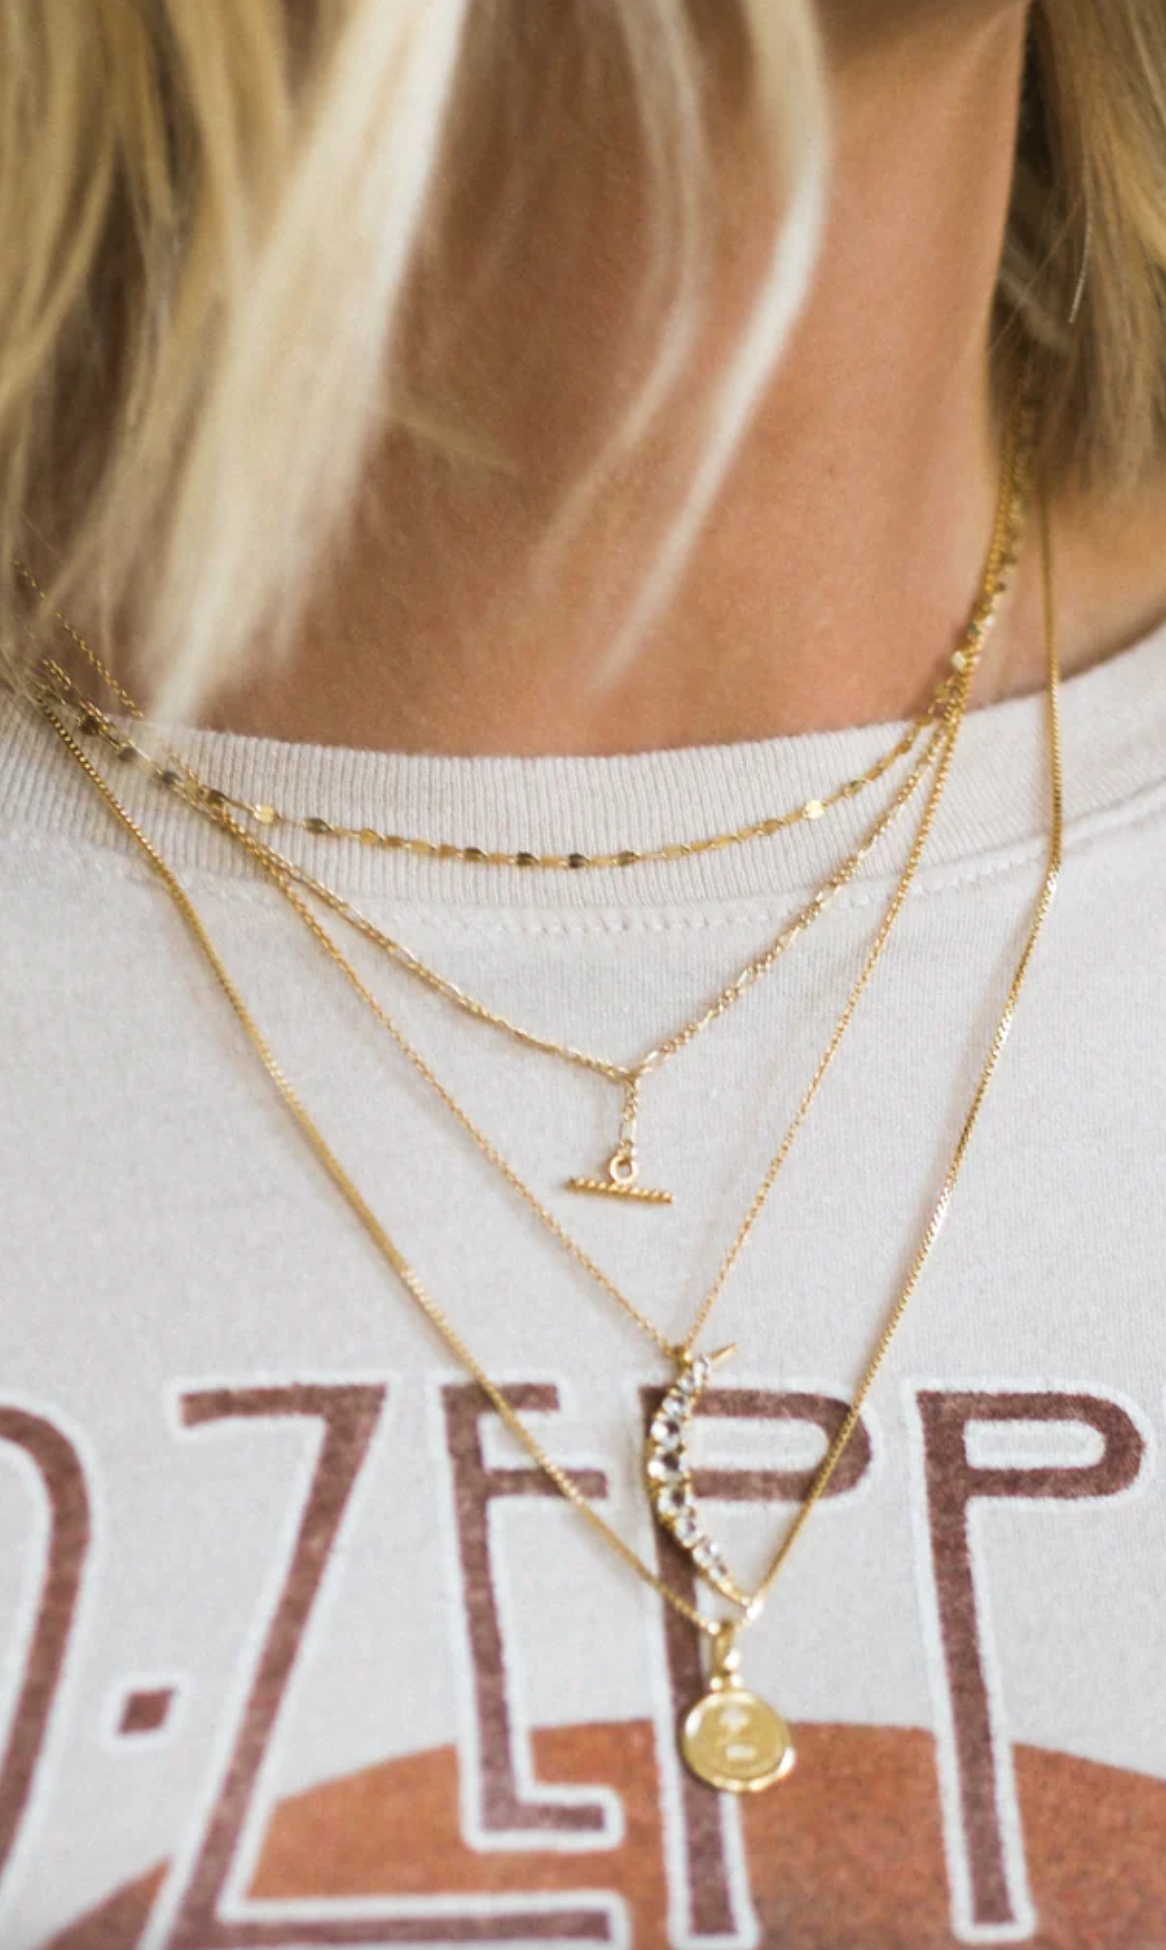 Shimmer Necklace | 10K Gold